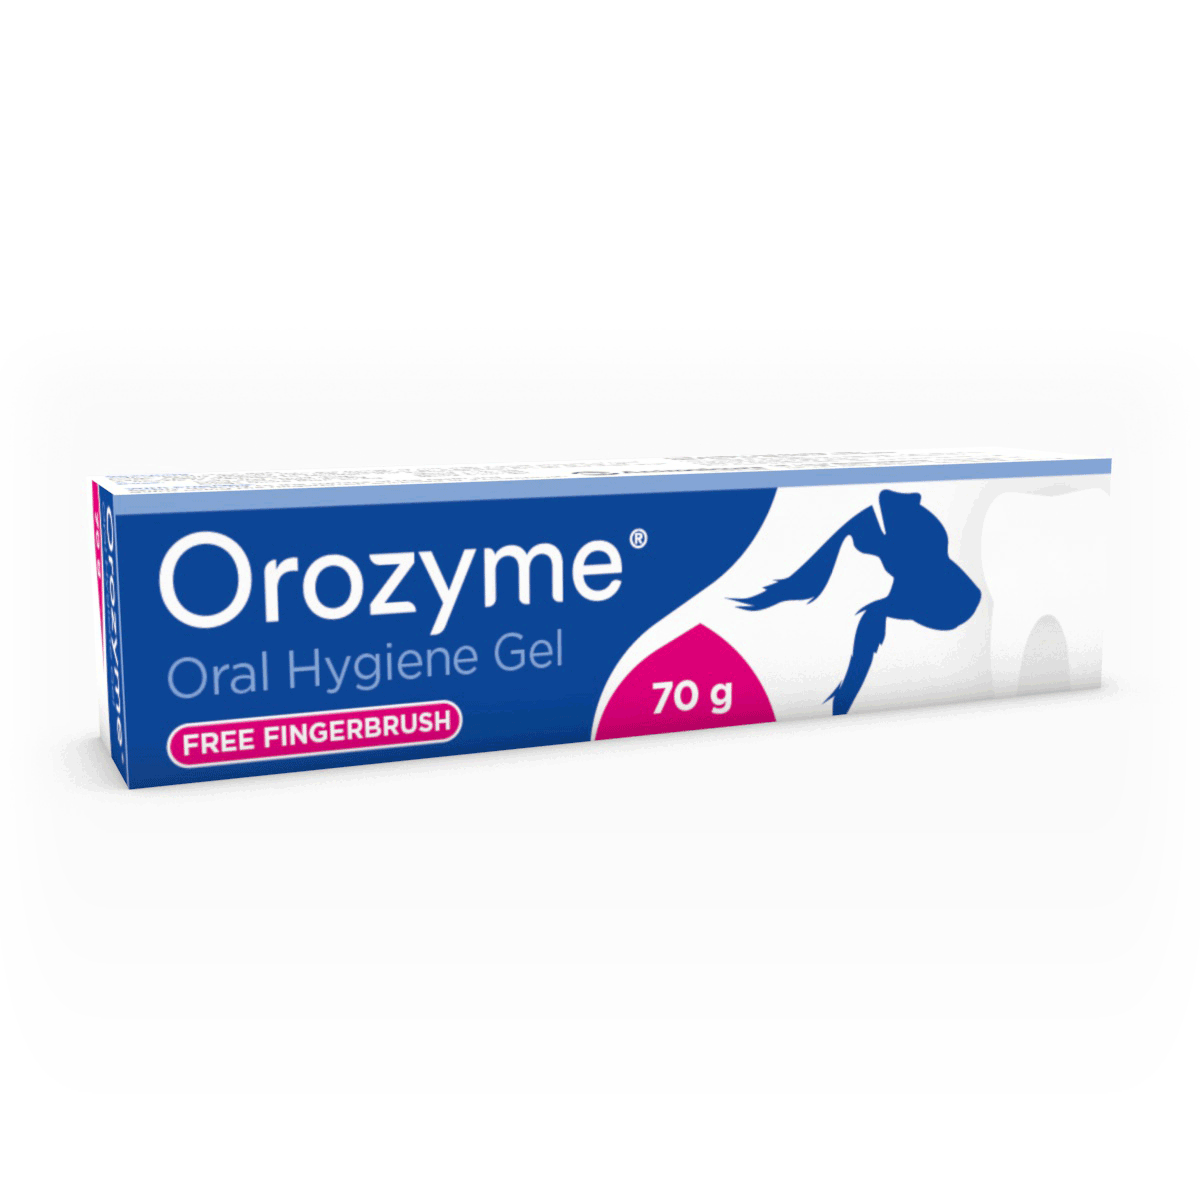 Orozyme oral hygiene gel box